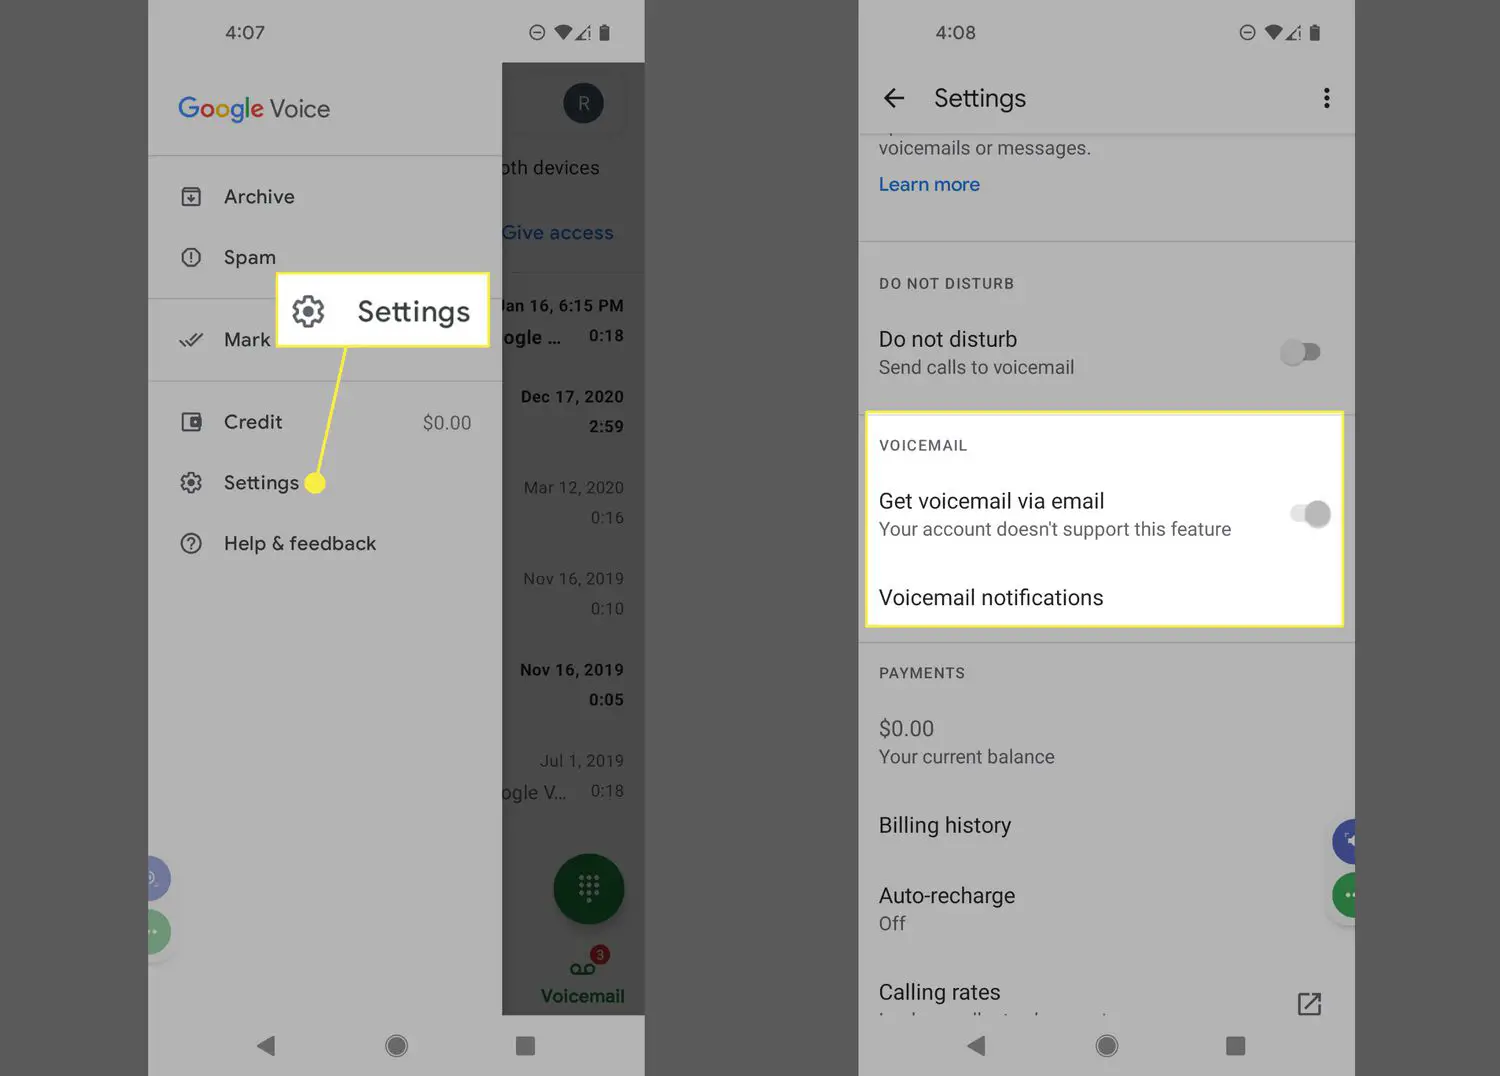 Configurações e opções de correio de voz destacadas no aplicativo Google Voice